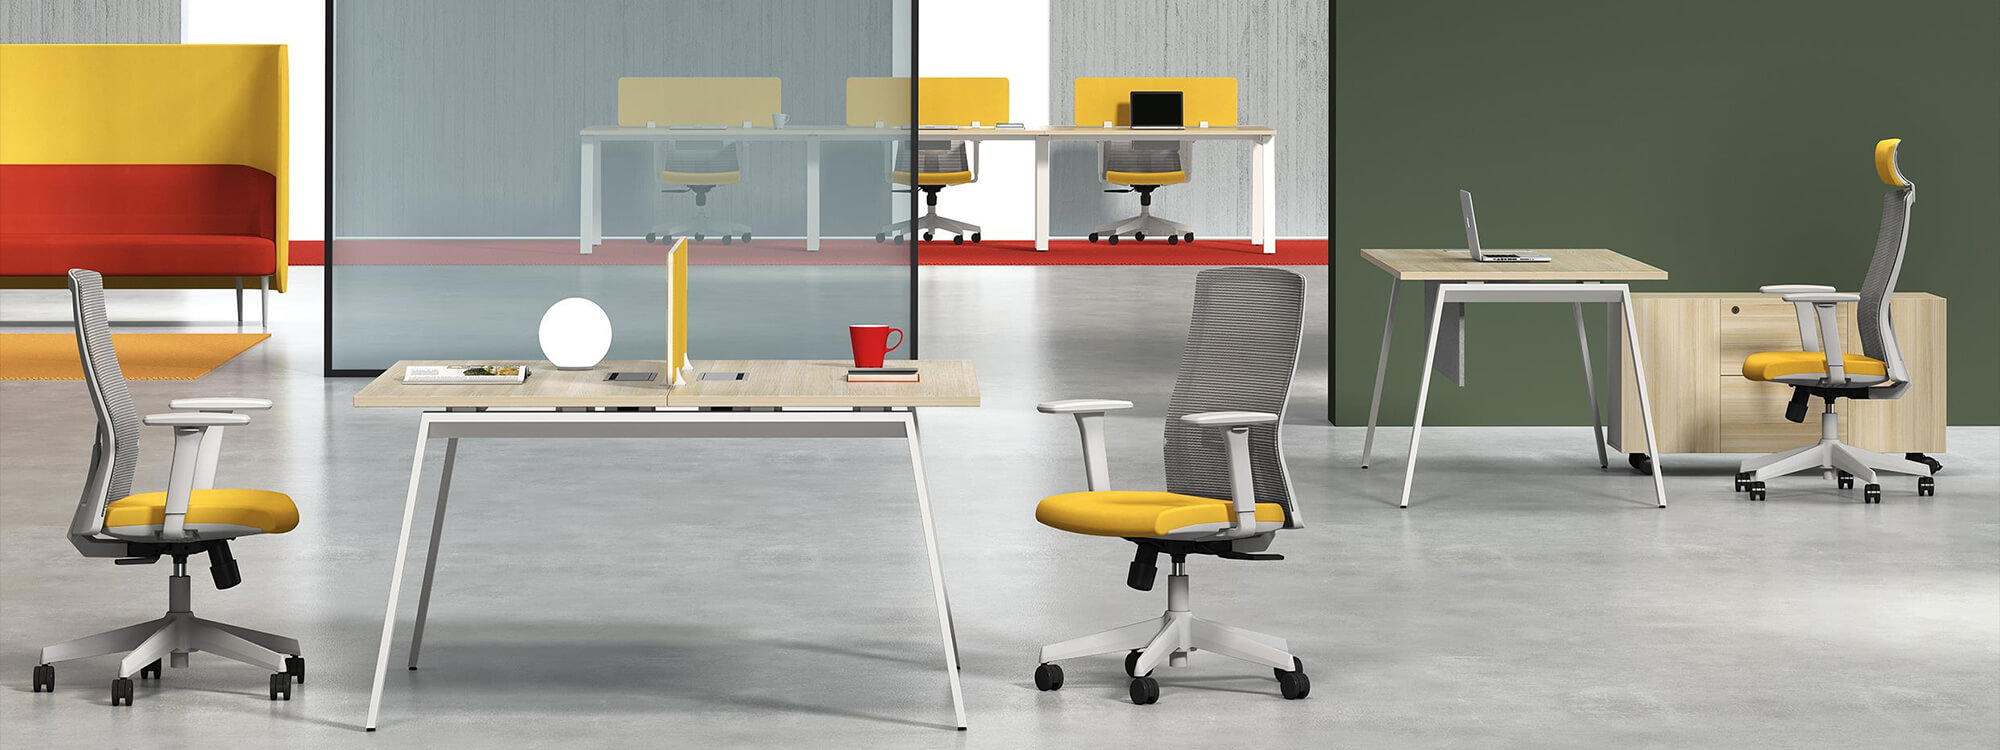 Dans le bureau se trouve un poste de travail à deux places à côté d'une chaise de bureau avec un coussin jaune.